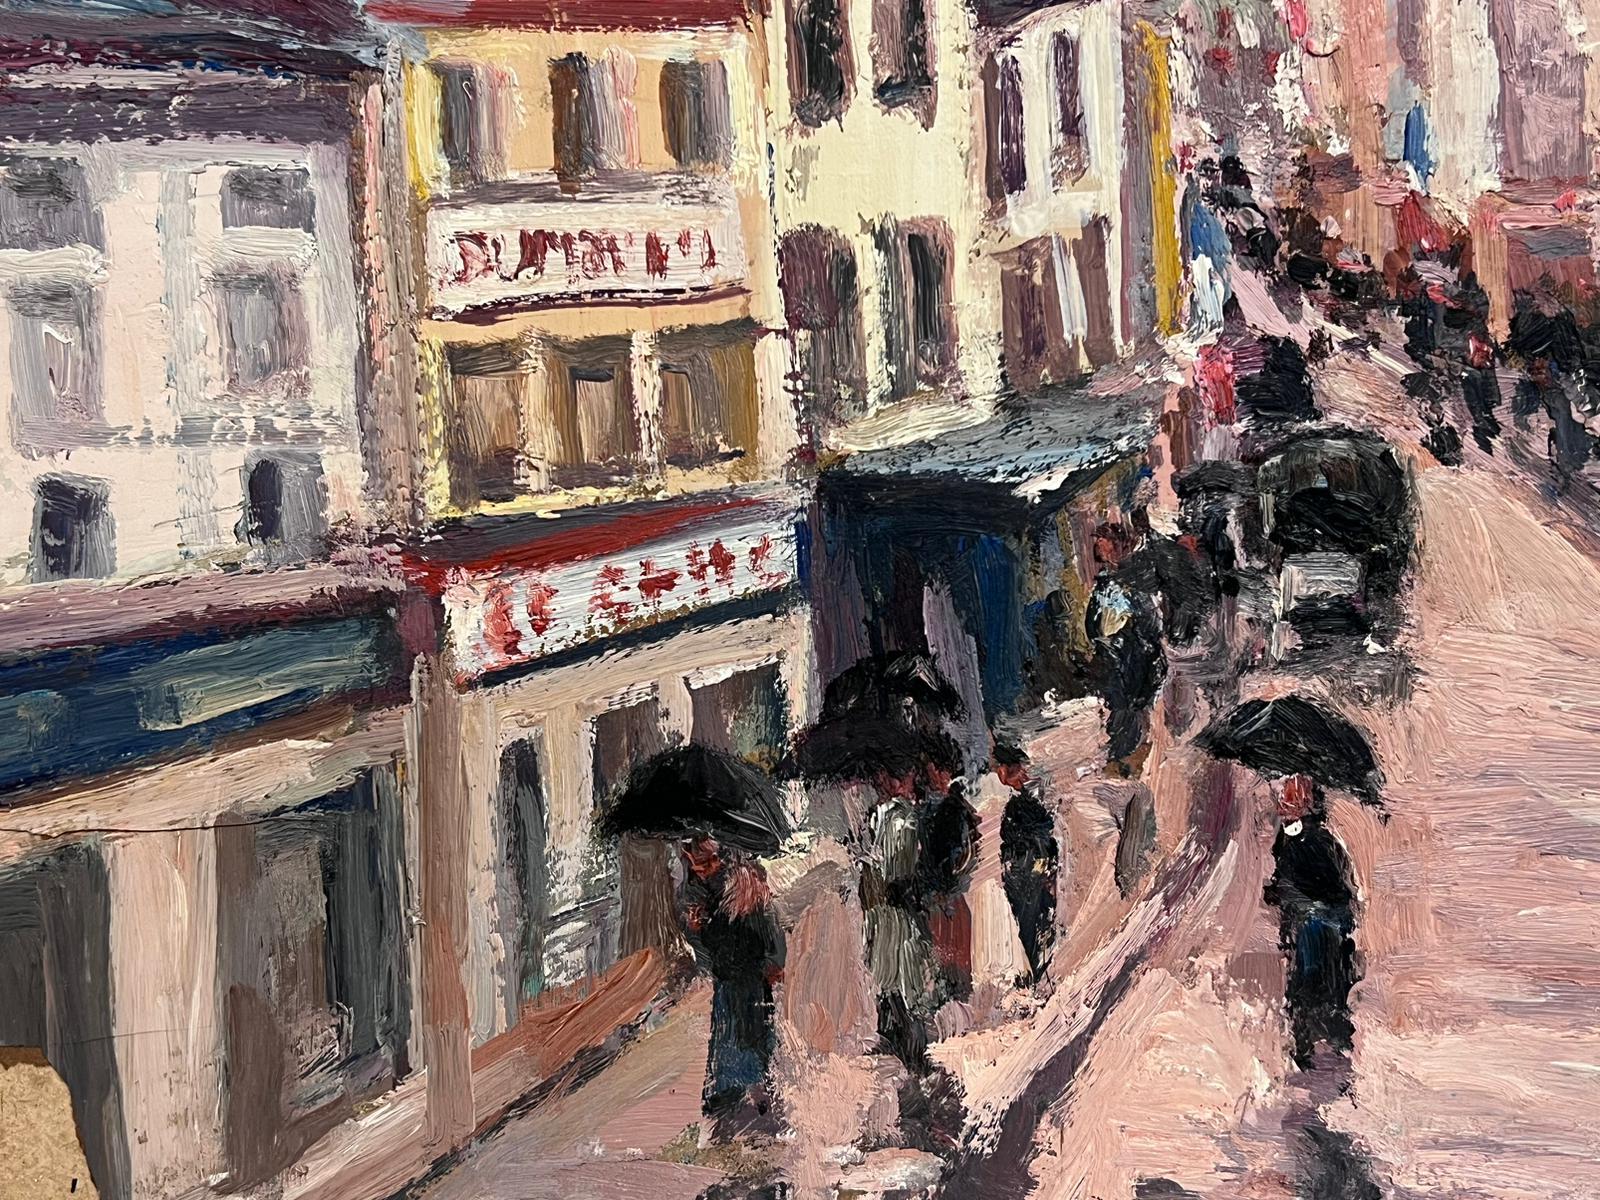 Artistics/ School : Léon Hatot (français 1883-1953)

Titre : Peinture à l'huile impressionniste 

Support : peinture à l'huile signée sur papier épais, collée sur carton sans encadrement.
datant de 1939

Taille : peinture : 13 x 20